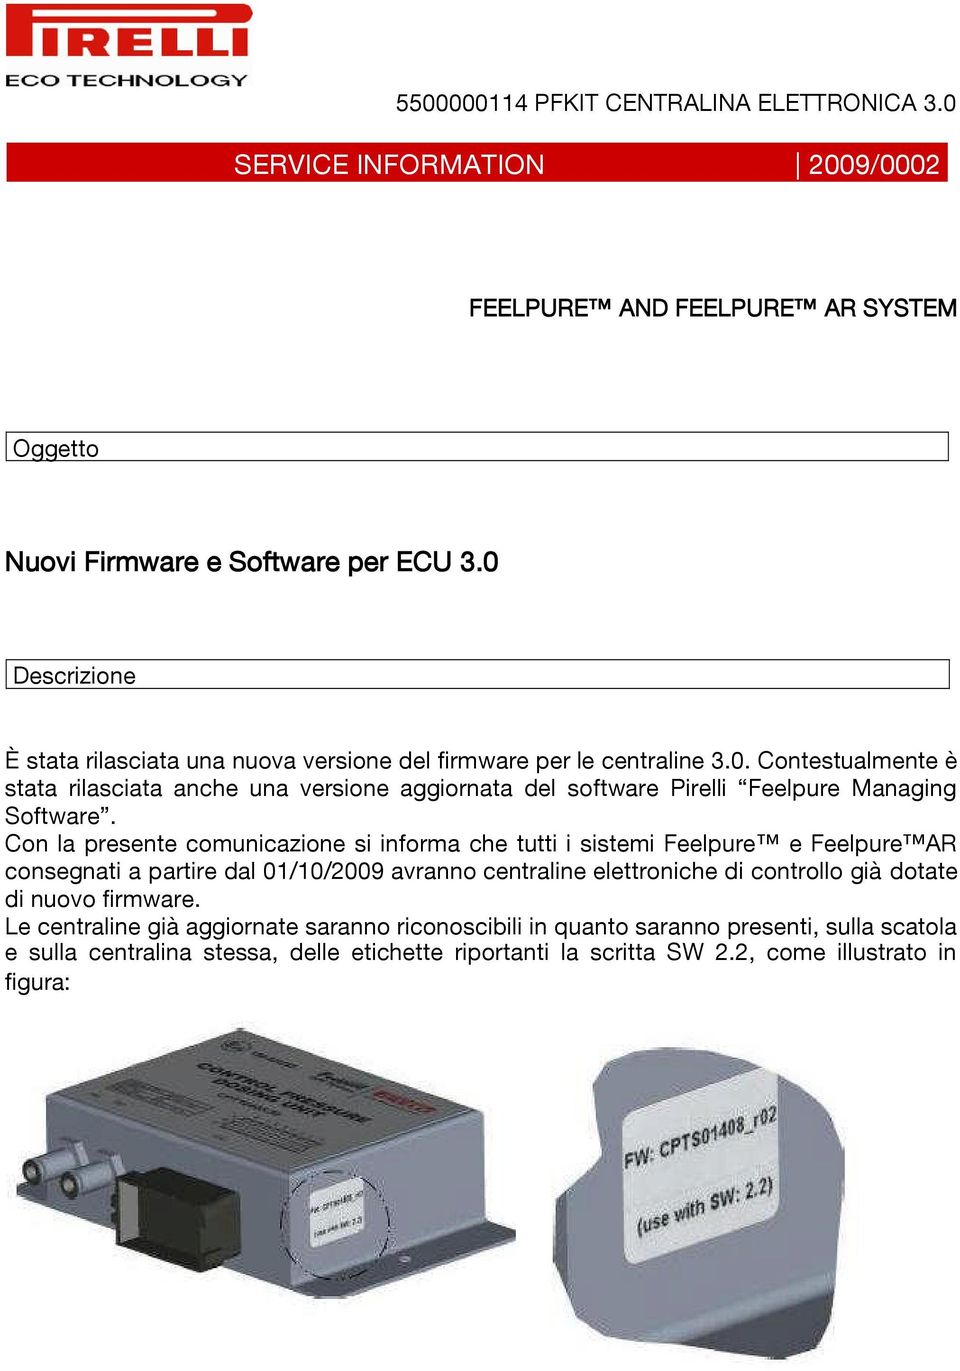 Con la presente comunicazione si informa che tutti i sistemi Feelpure e Feelpure AR consegnati a partire dal 01/10/2009 avranno centraline elettroniche di controllo già dotate di nuovo